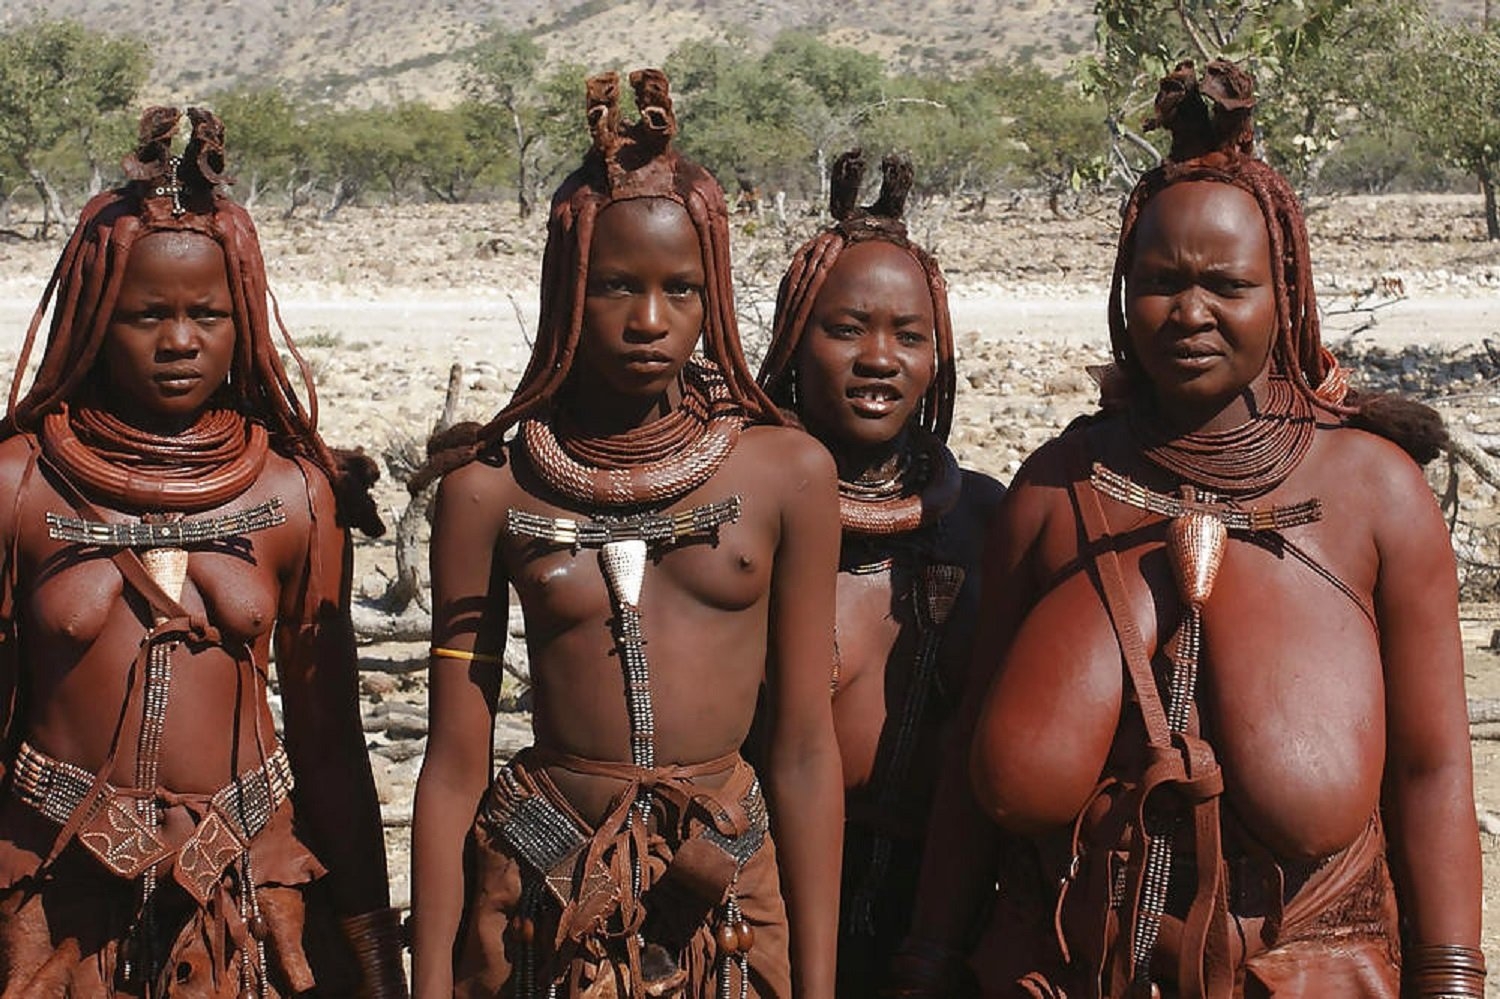 Негритянки одного раздетого племени